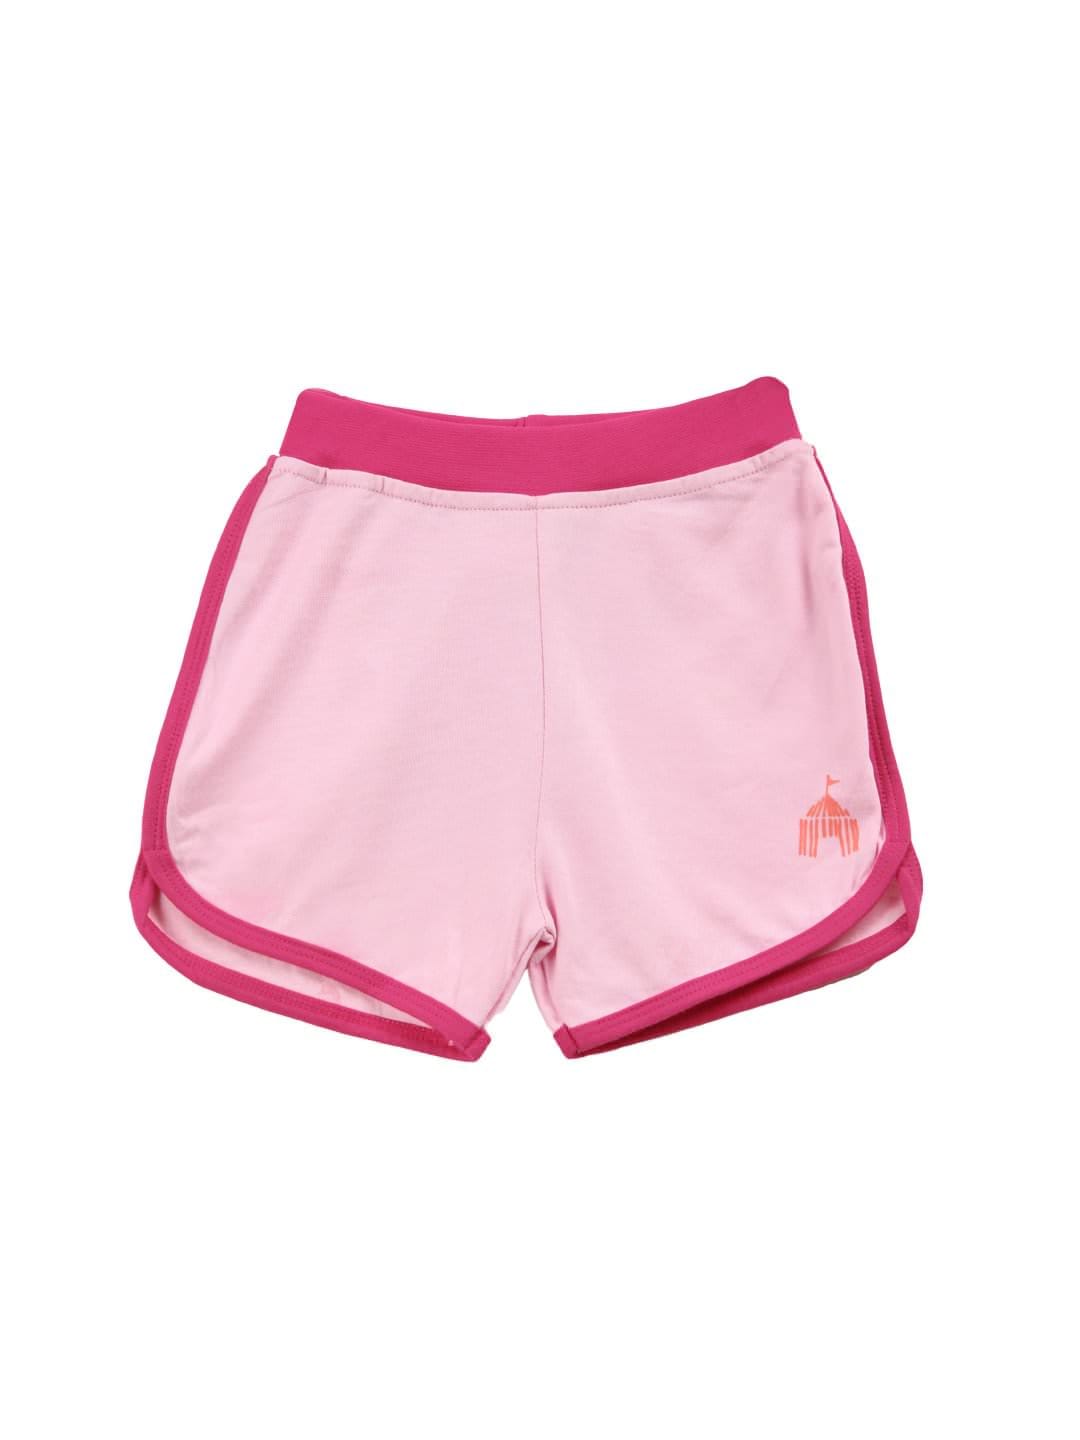 Madagascar 3 Girls Pink Shorts